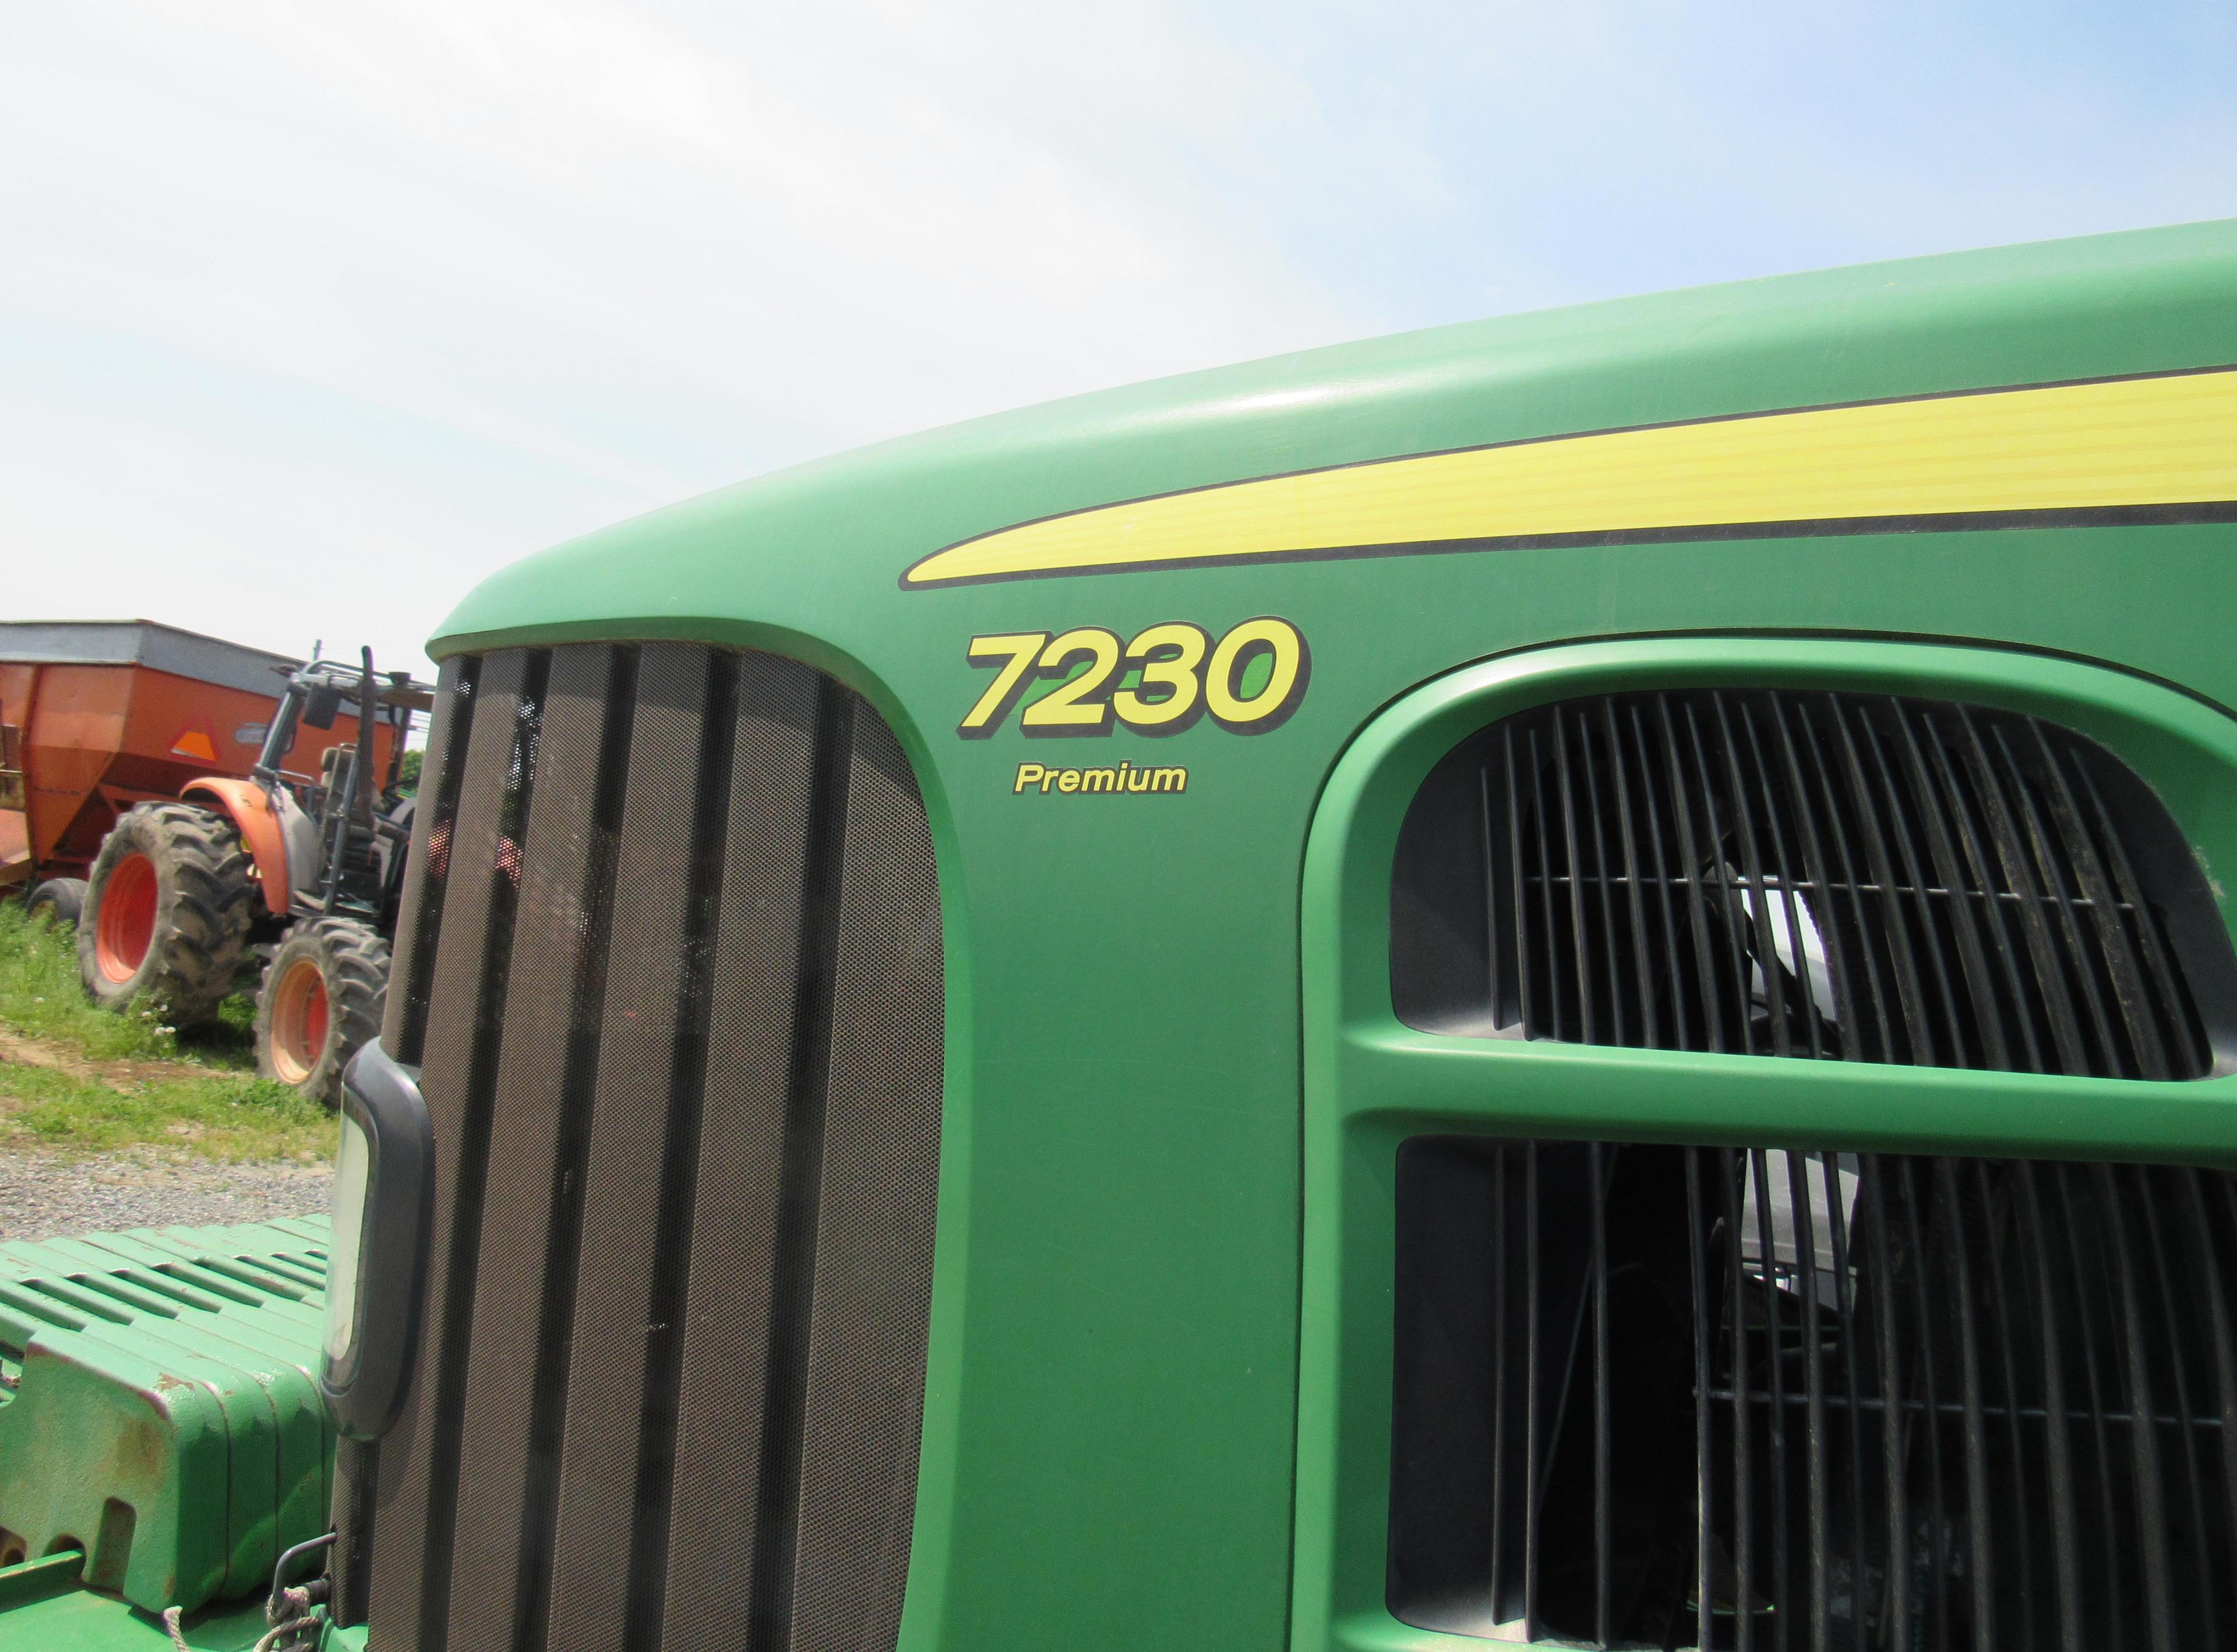 JD 7230 Premium Cab Tractor